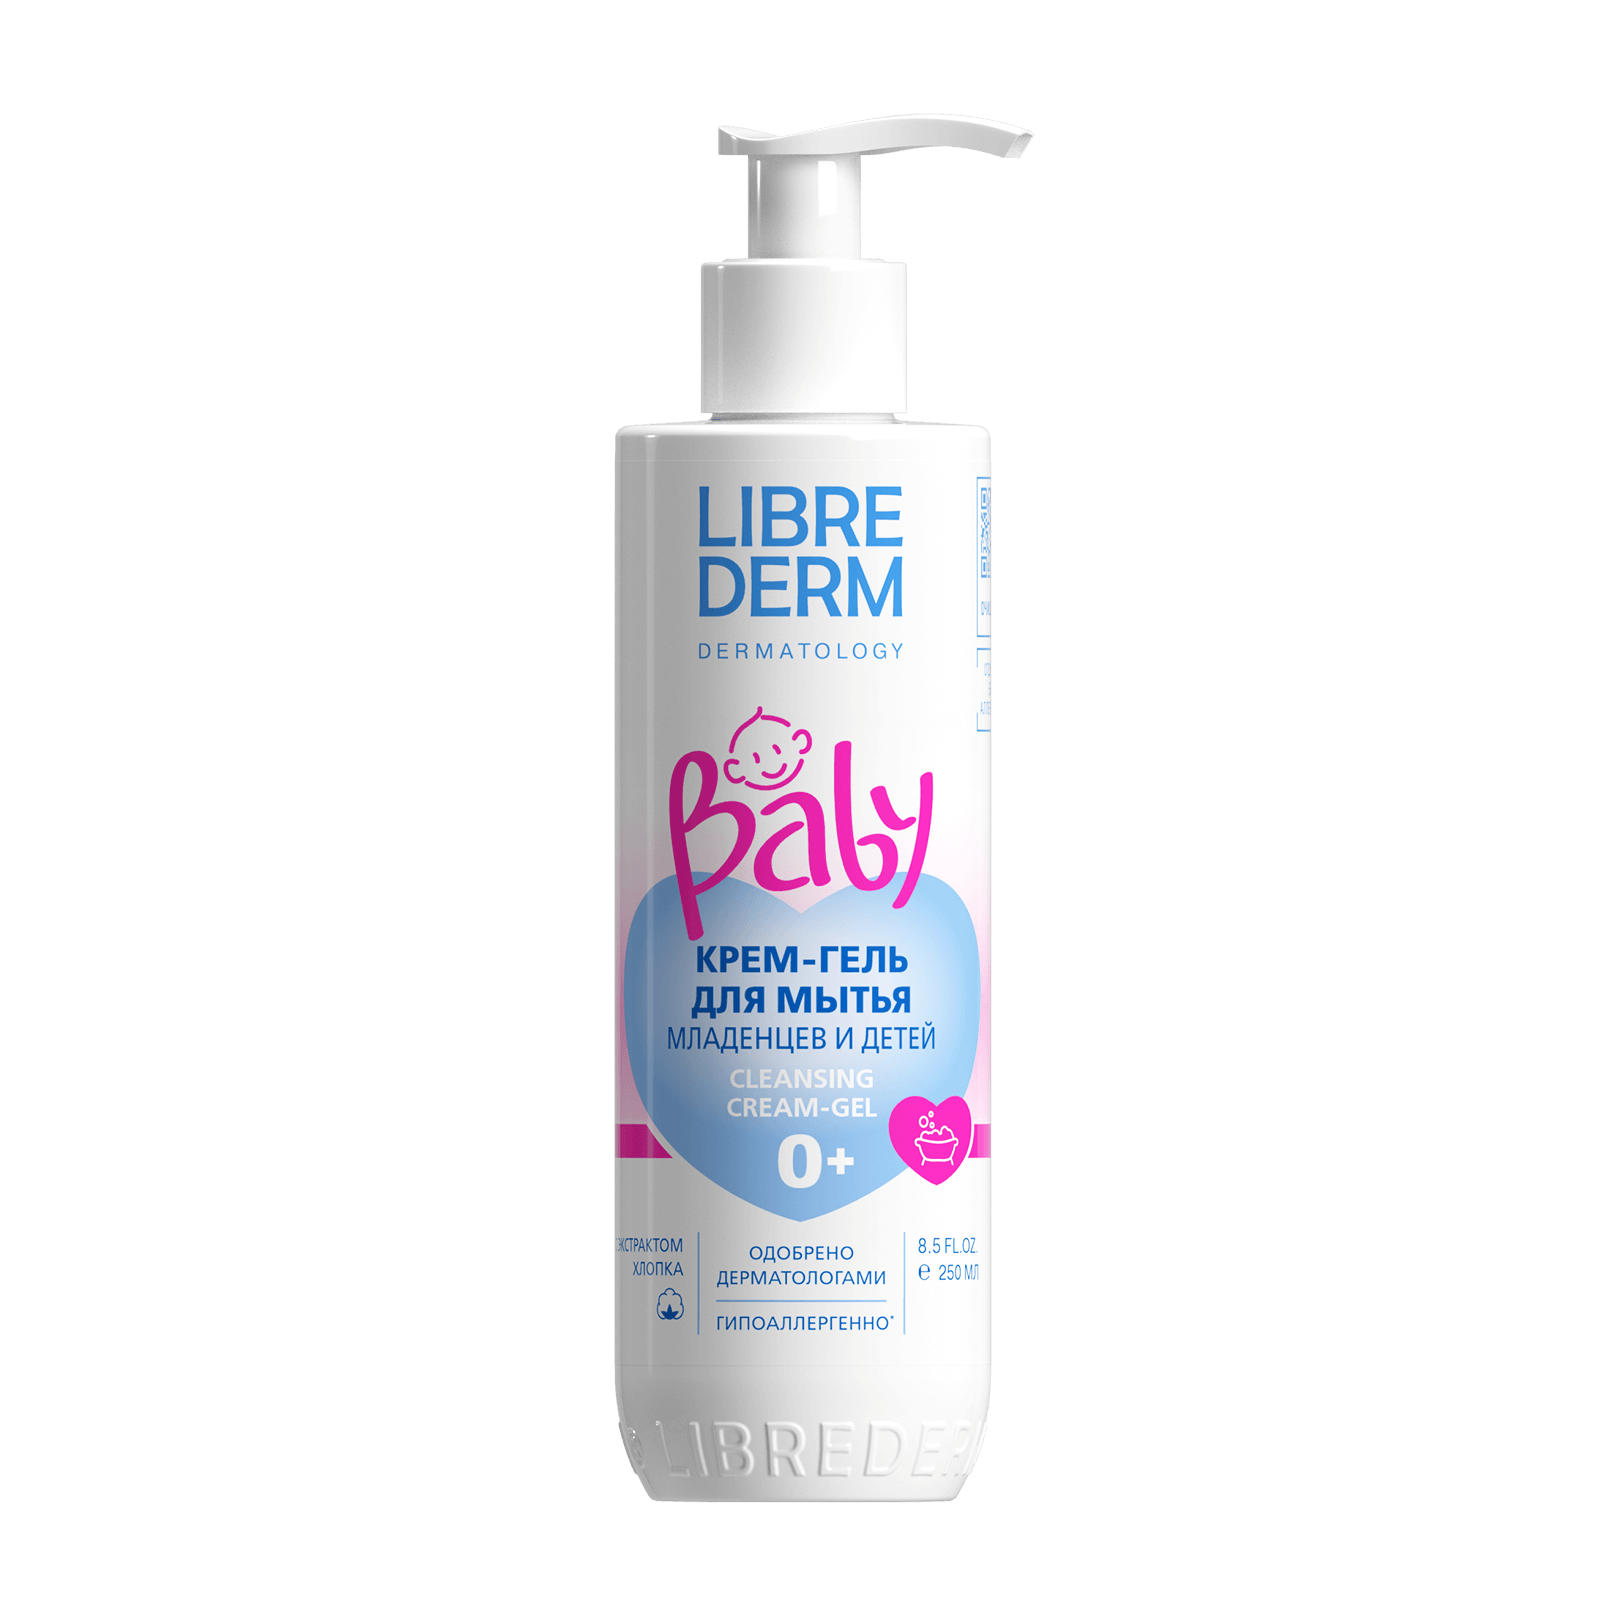 Librederm Baby, крем-гель для мытья новорожденных младенцев и детей 250 мл boneco фильтр baby filter а502 для очистителя воздуха boneco р500 1